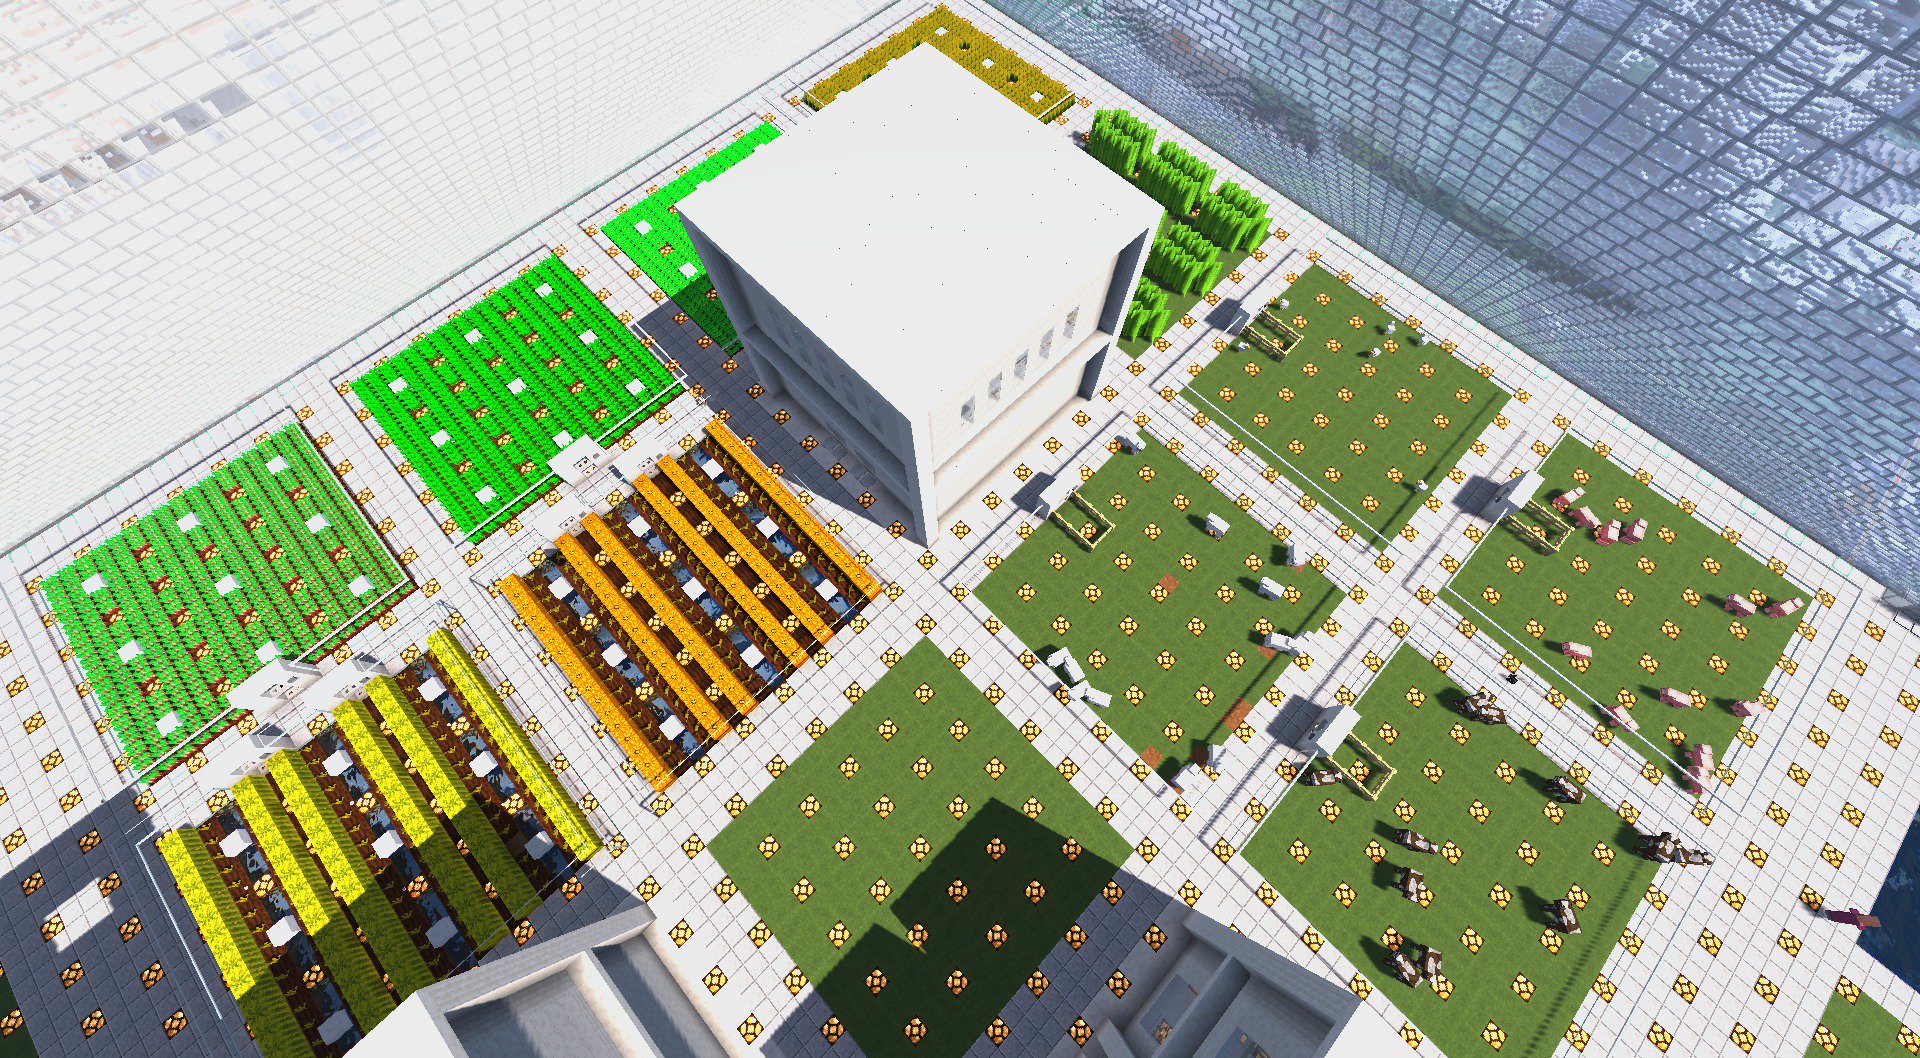 Smith 養蜂業 マイクラサーバー開放中 Sur Twitter セントラルタワー内建築第5弾 実は随分前に整備していた農業区画です 中央の研究棟を囲むように畑と牧場が配置されています 畑にはver 1 9で新規実装された赤カブをはじめ色とりどりの作物が Minecraft スミス